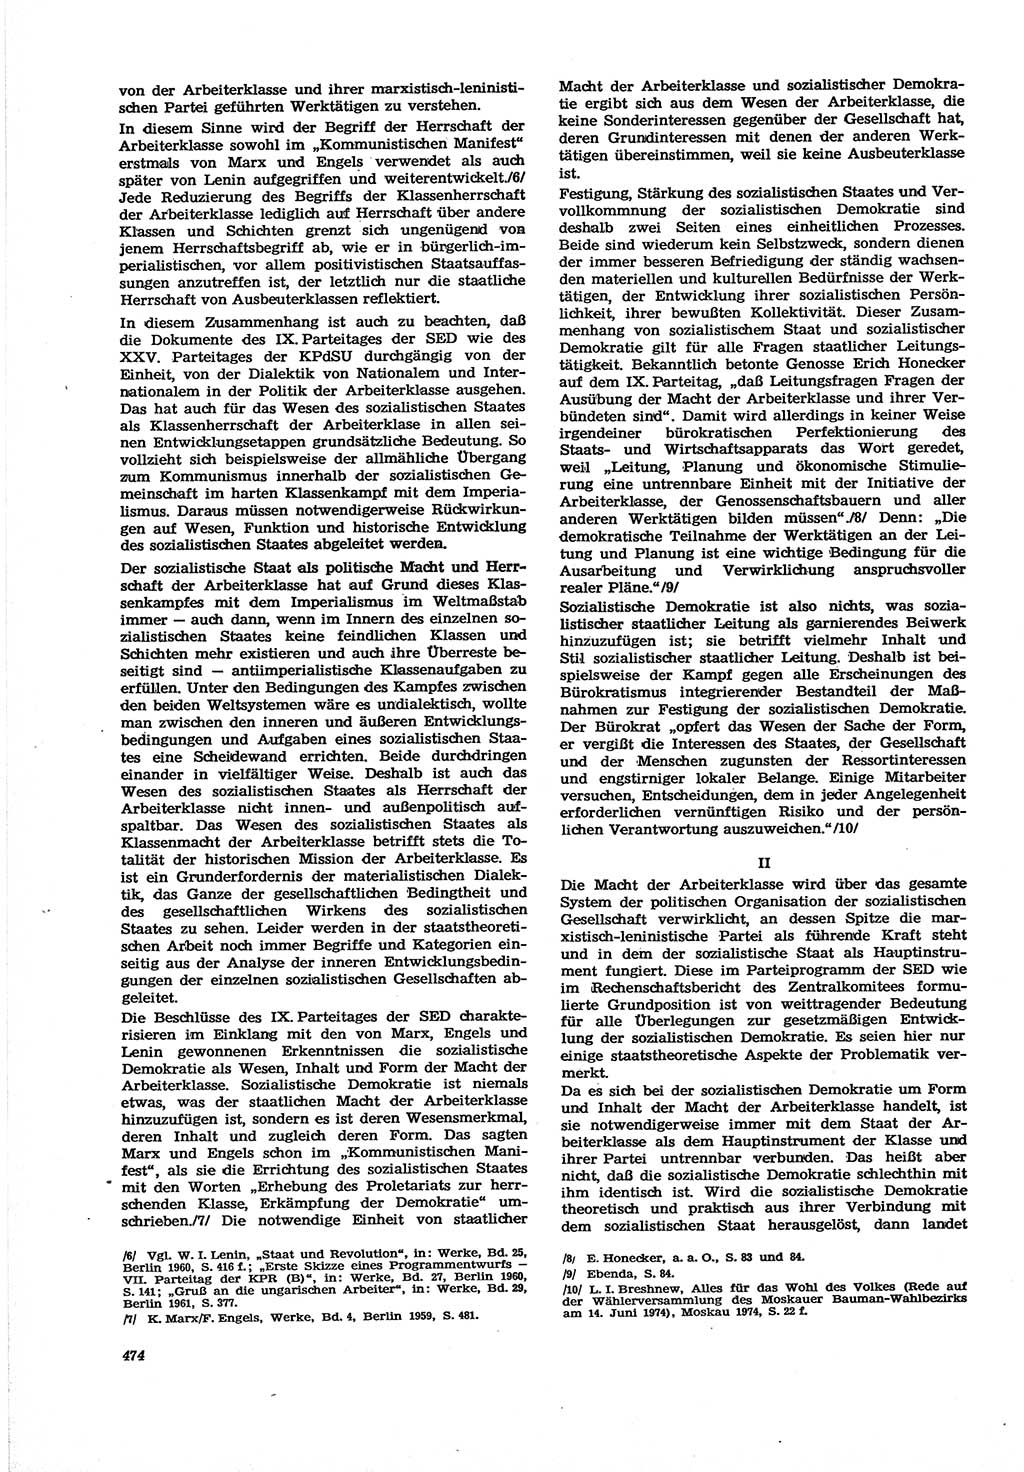 Neue Justiz (NJ), Zeitschrift für Recht und Rechtswissenschaft [Deutsche Demokratische Republik (DDR)], 30. Jahrgang 1976, Seite 474 (NJ DDR 1976, S. 474)